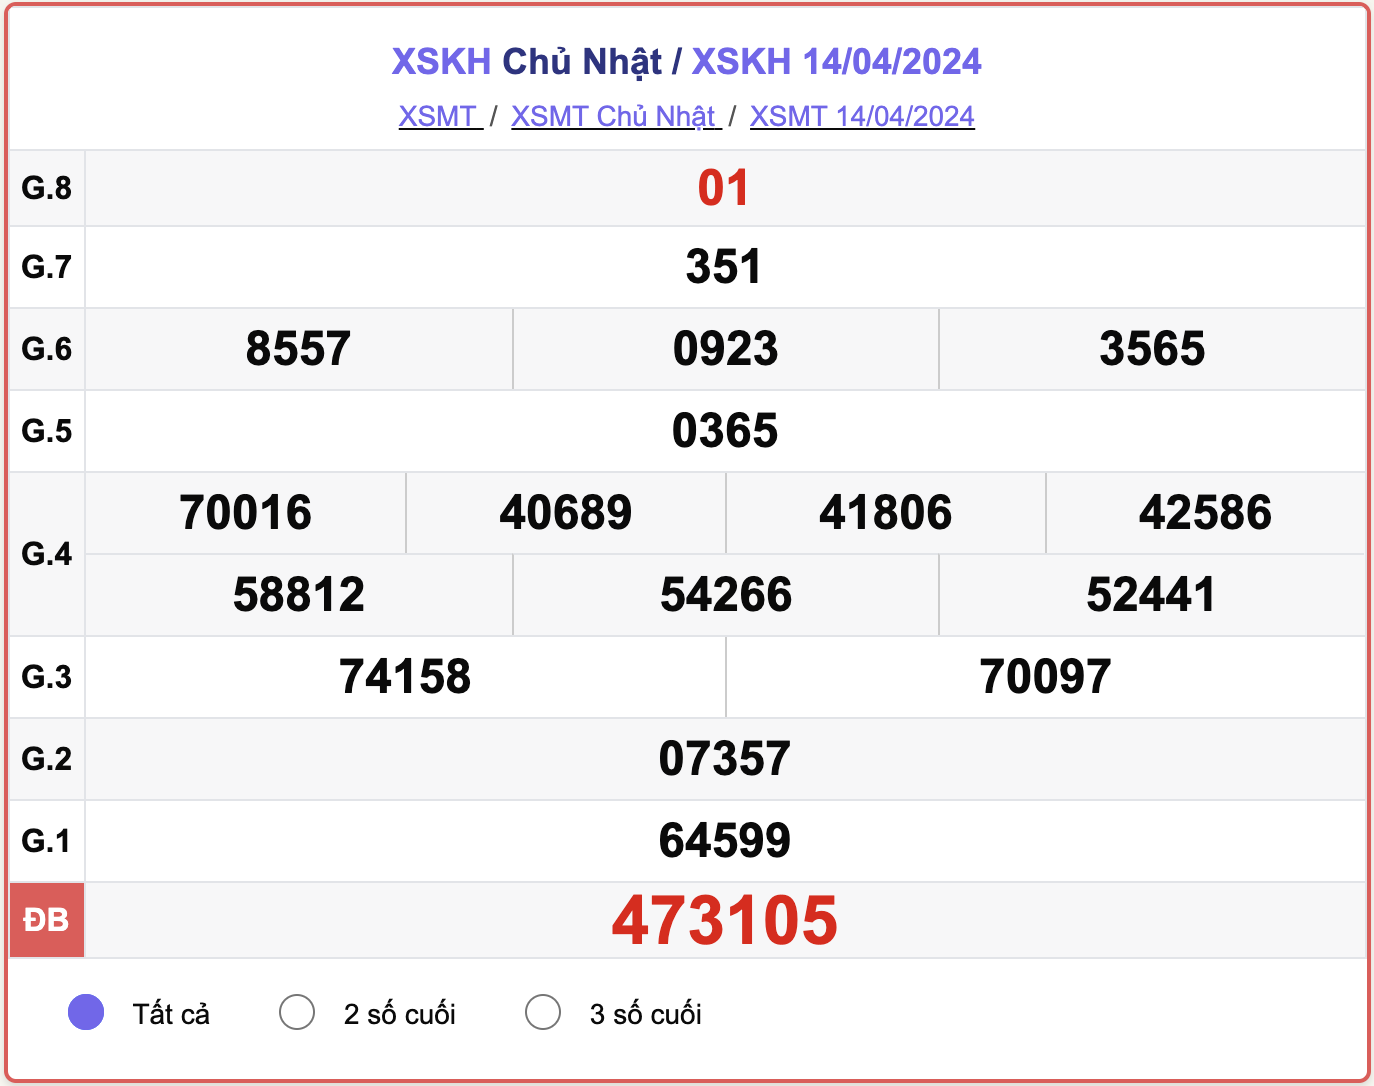 XSKH Chủ nhật, kết quả xổ số Khánh Hòa ngày 14/4/2024.